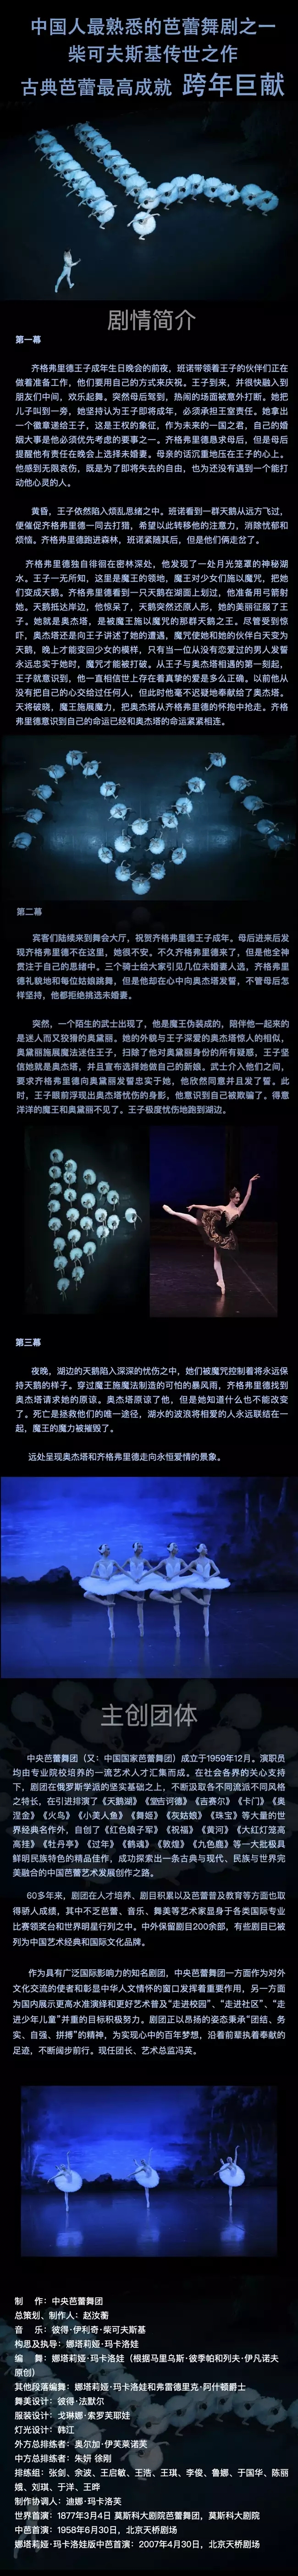 2022经典巨献中央芭蕾舞团《天鹅湖》-西安站